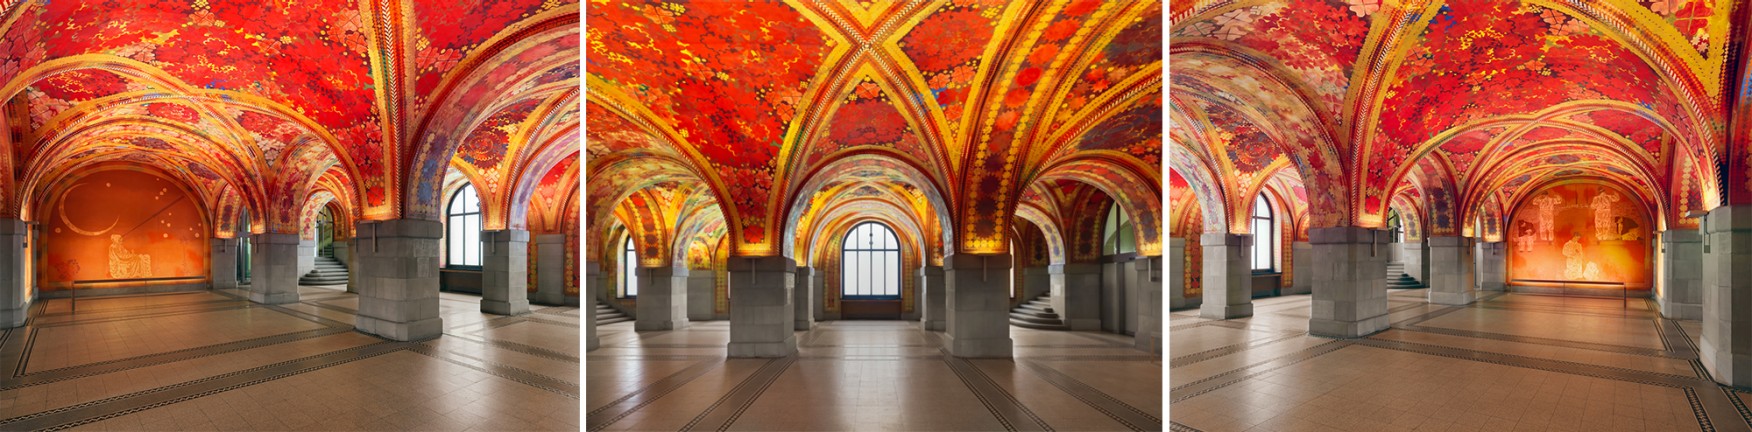 Die prächtige Halle war ein düsteres Kellergewölbe, bevor sie von Augusto Giacometti mit drei Gehilfen von 1922 bis 1925 mit Deckengemälden und Wandbildern neu gestaltet wurde.